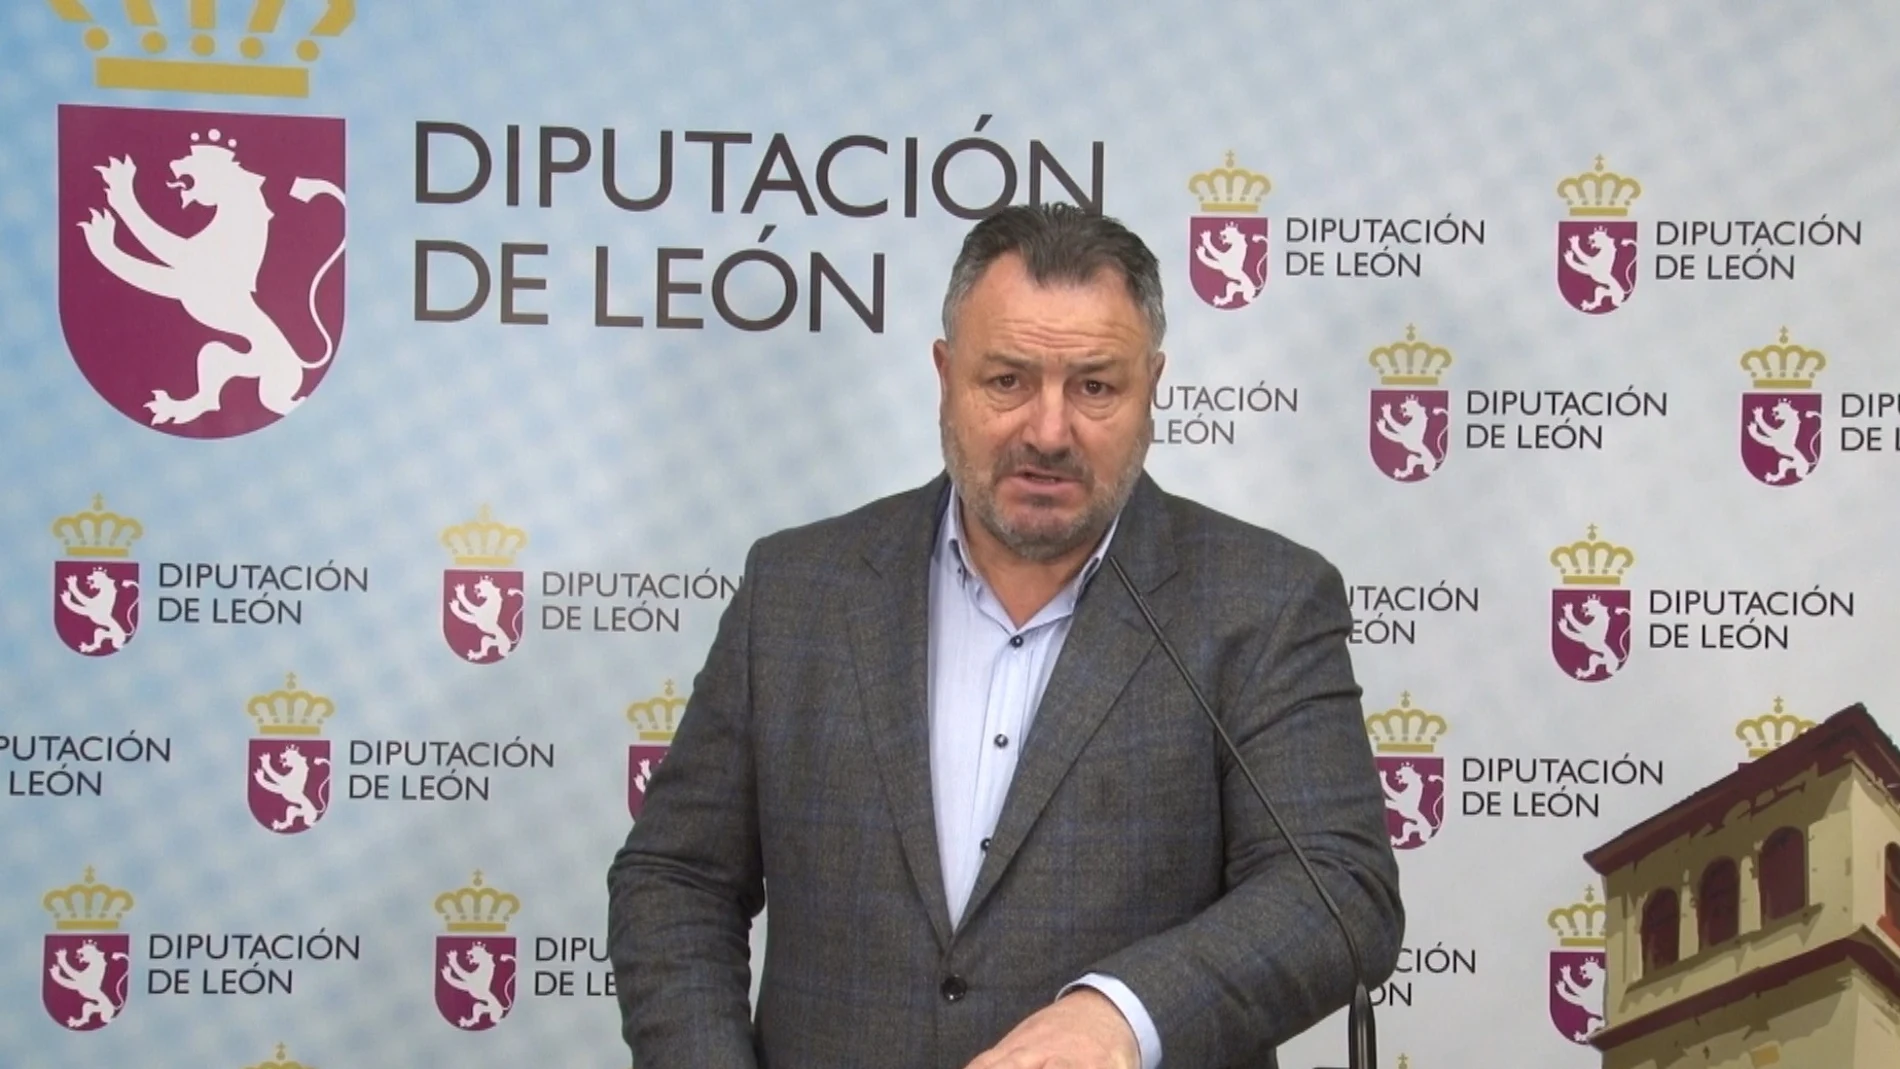 Coronavirus.- Diputación de León moviliza 124 millones para responder a la crisis